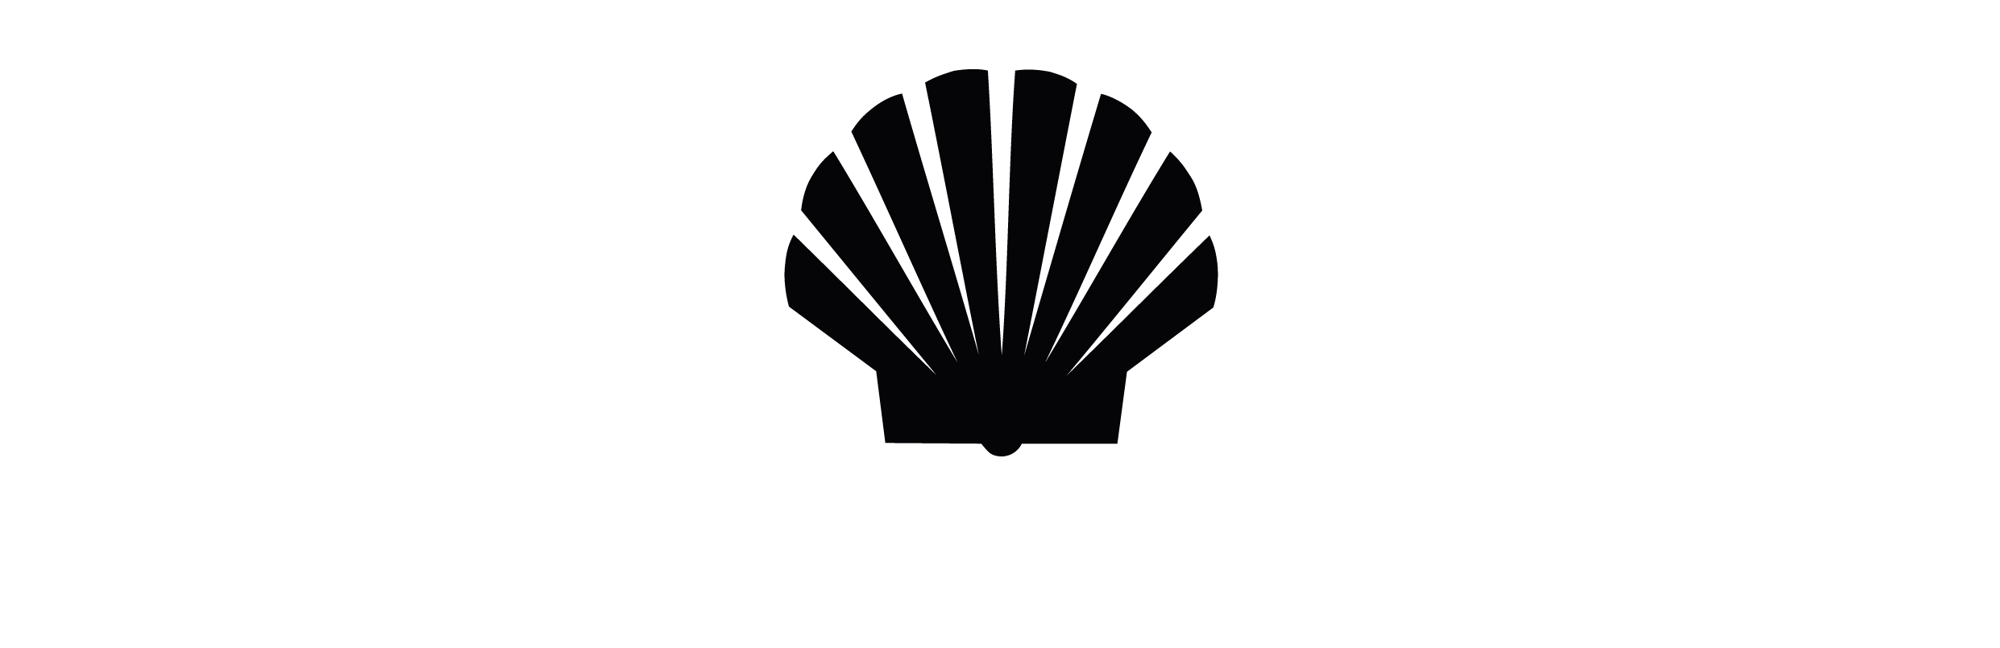 Shell_Weißgrau